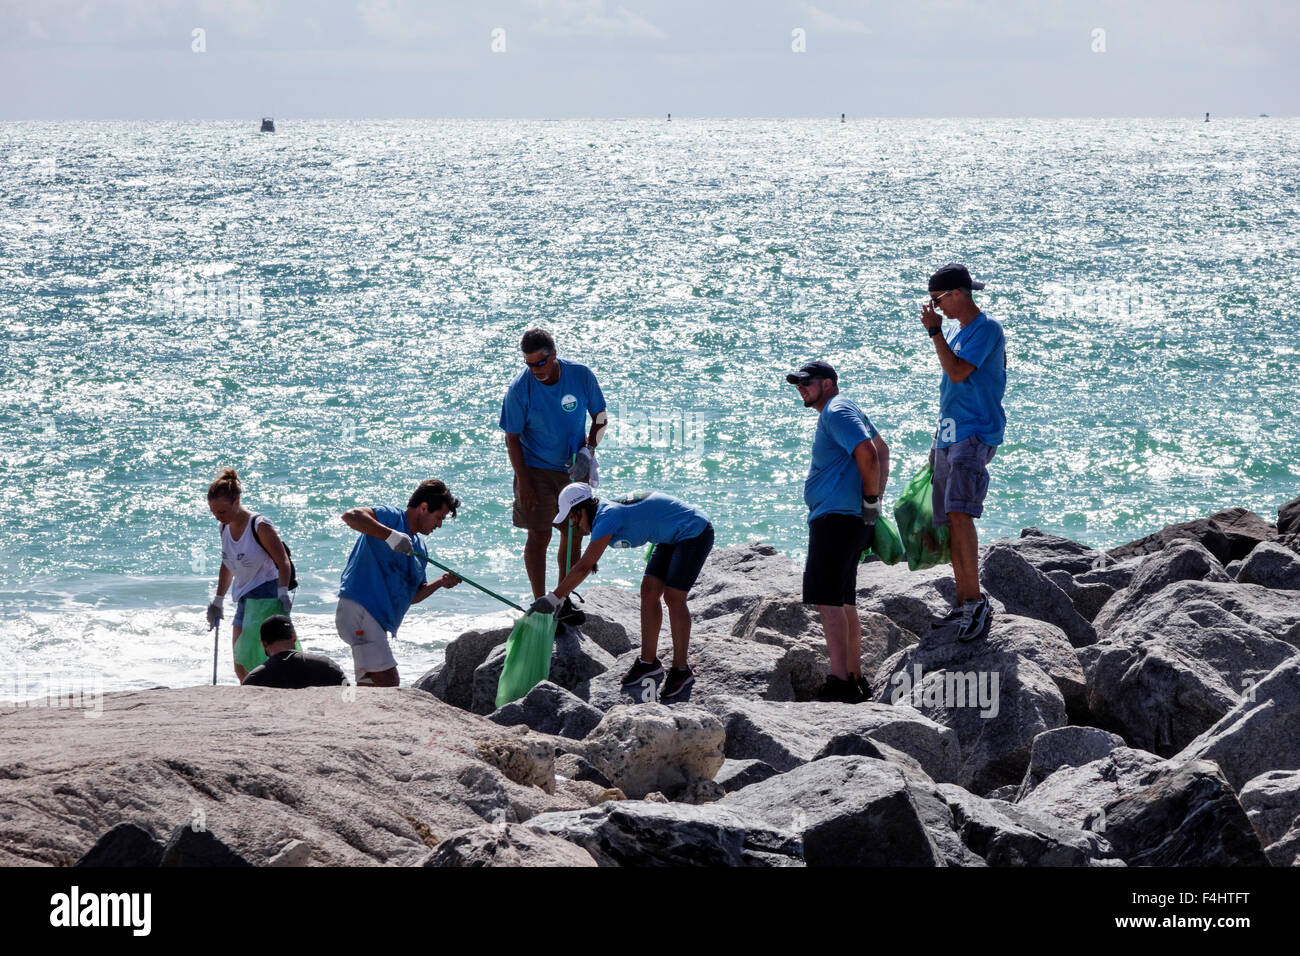 Miami Beach Florida, nettoyage, bénévoles bénévoles, travail d'équipe, hommes femmes, collecte de déchets impact jour océan Atlantique Banque D'Images